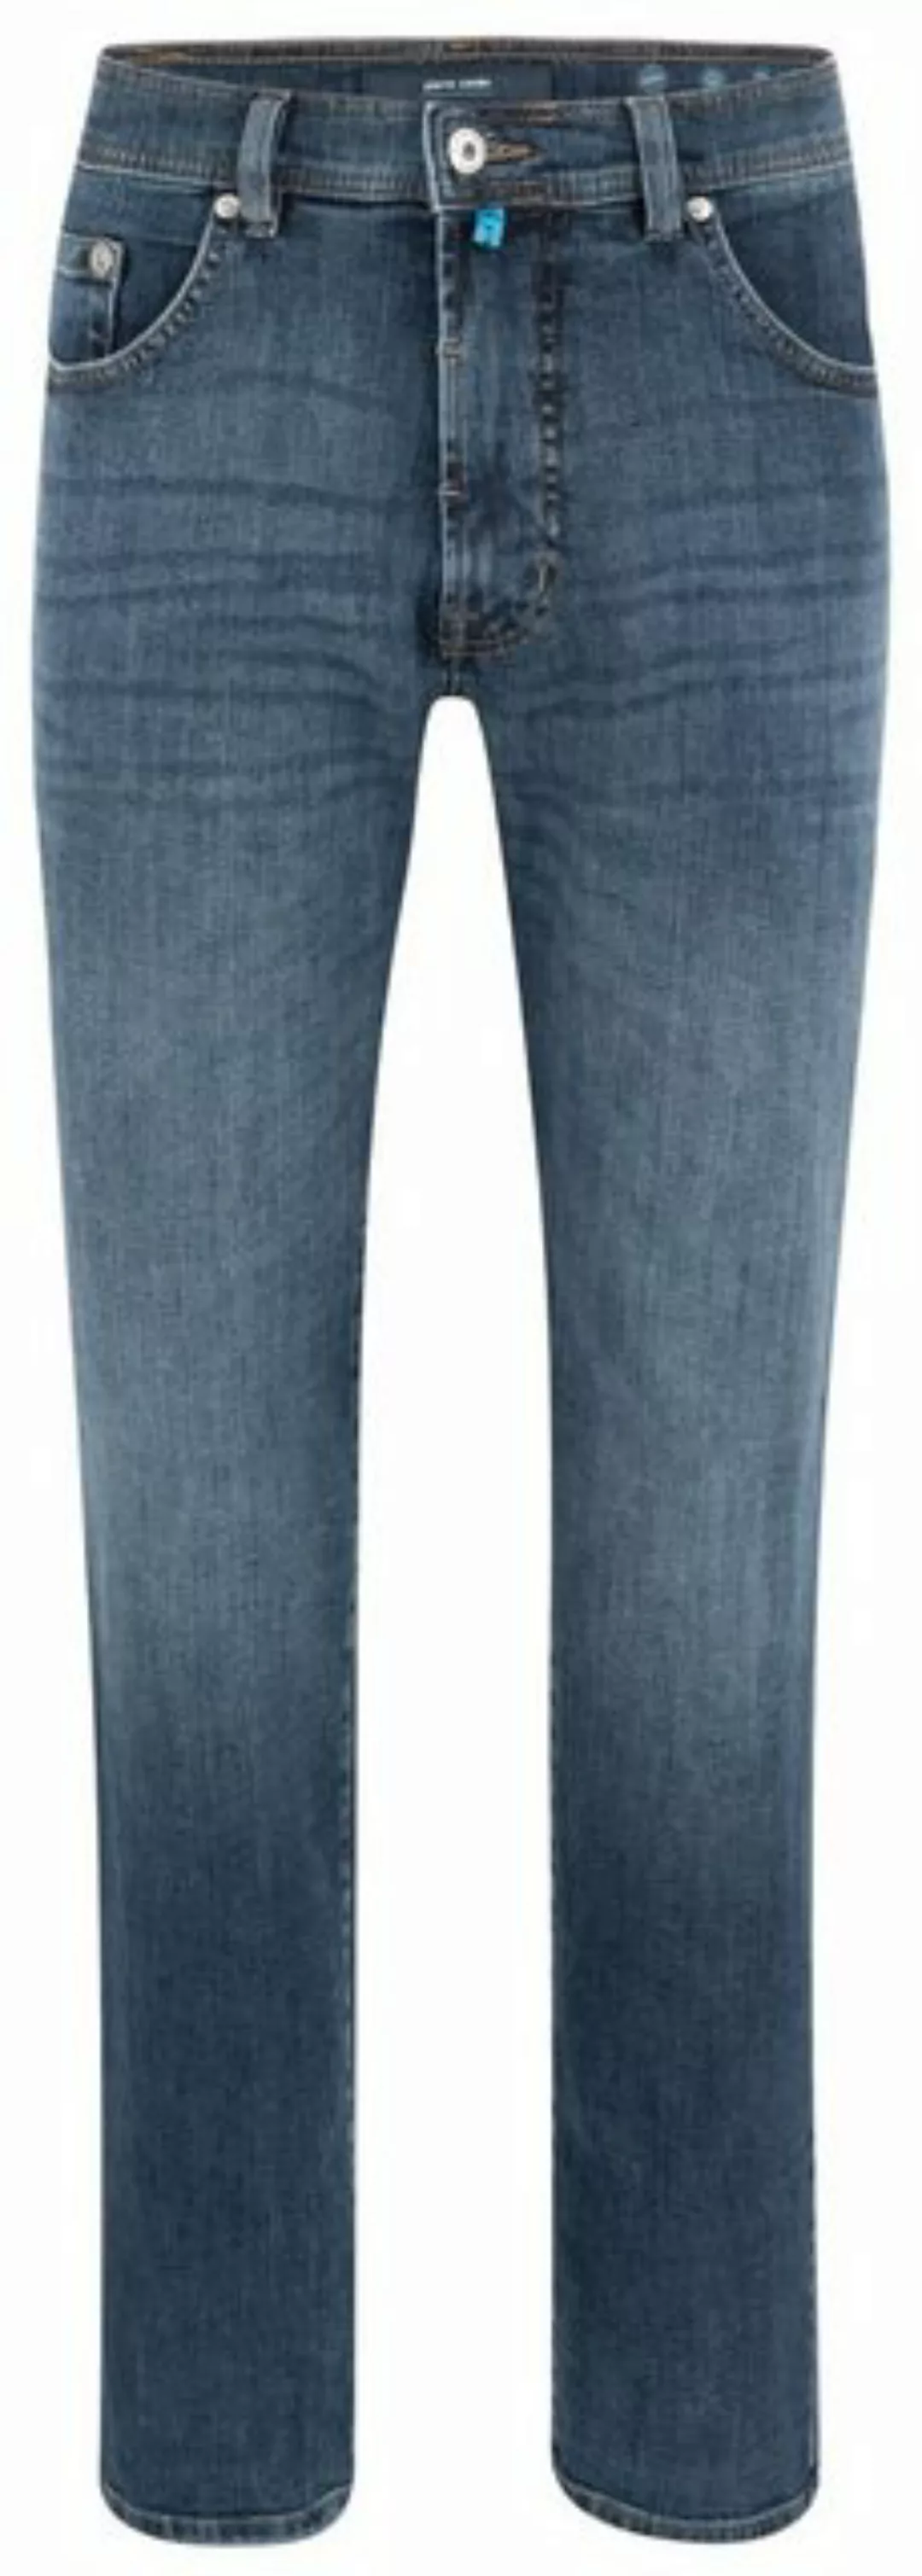 Pierre Cardin Bequeme Jeans Pierre Cardin / He.Jeans / Dijon günstig online kaufen